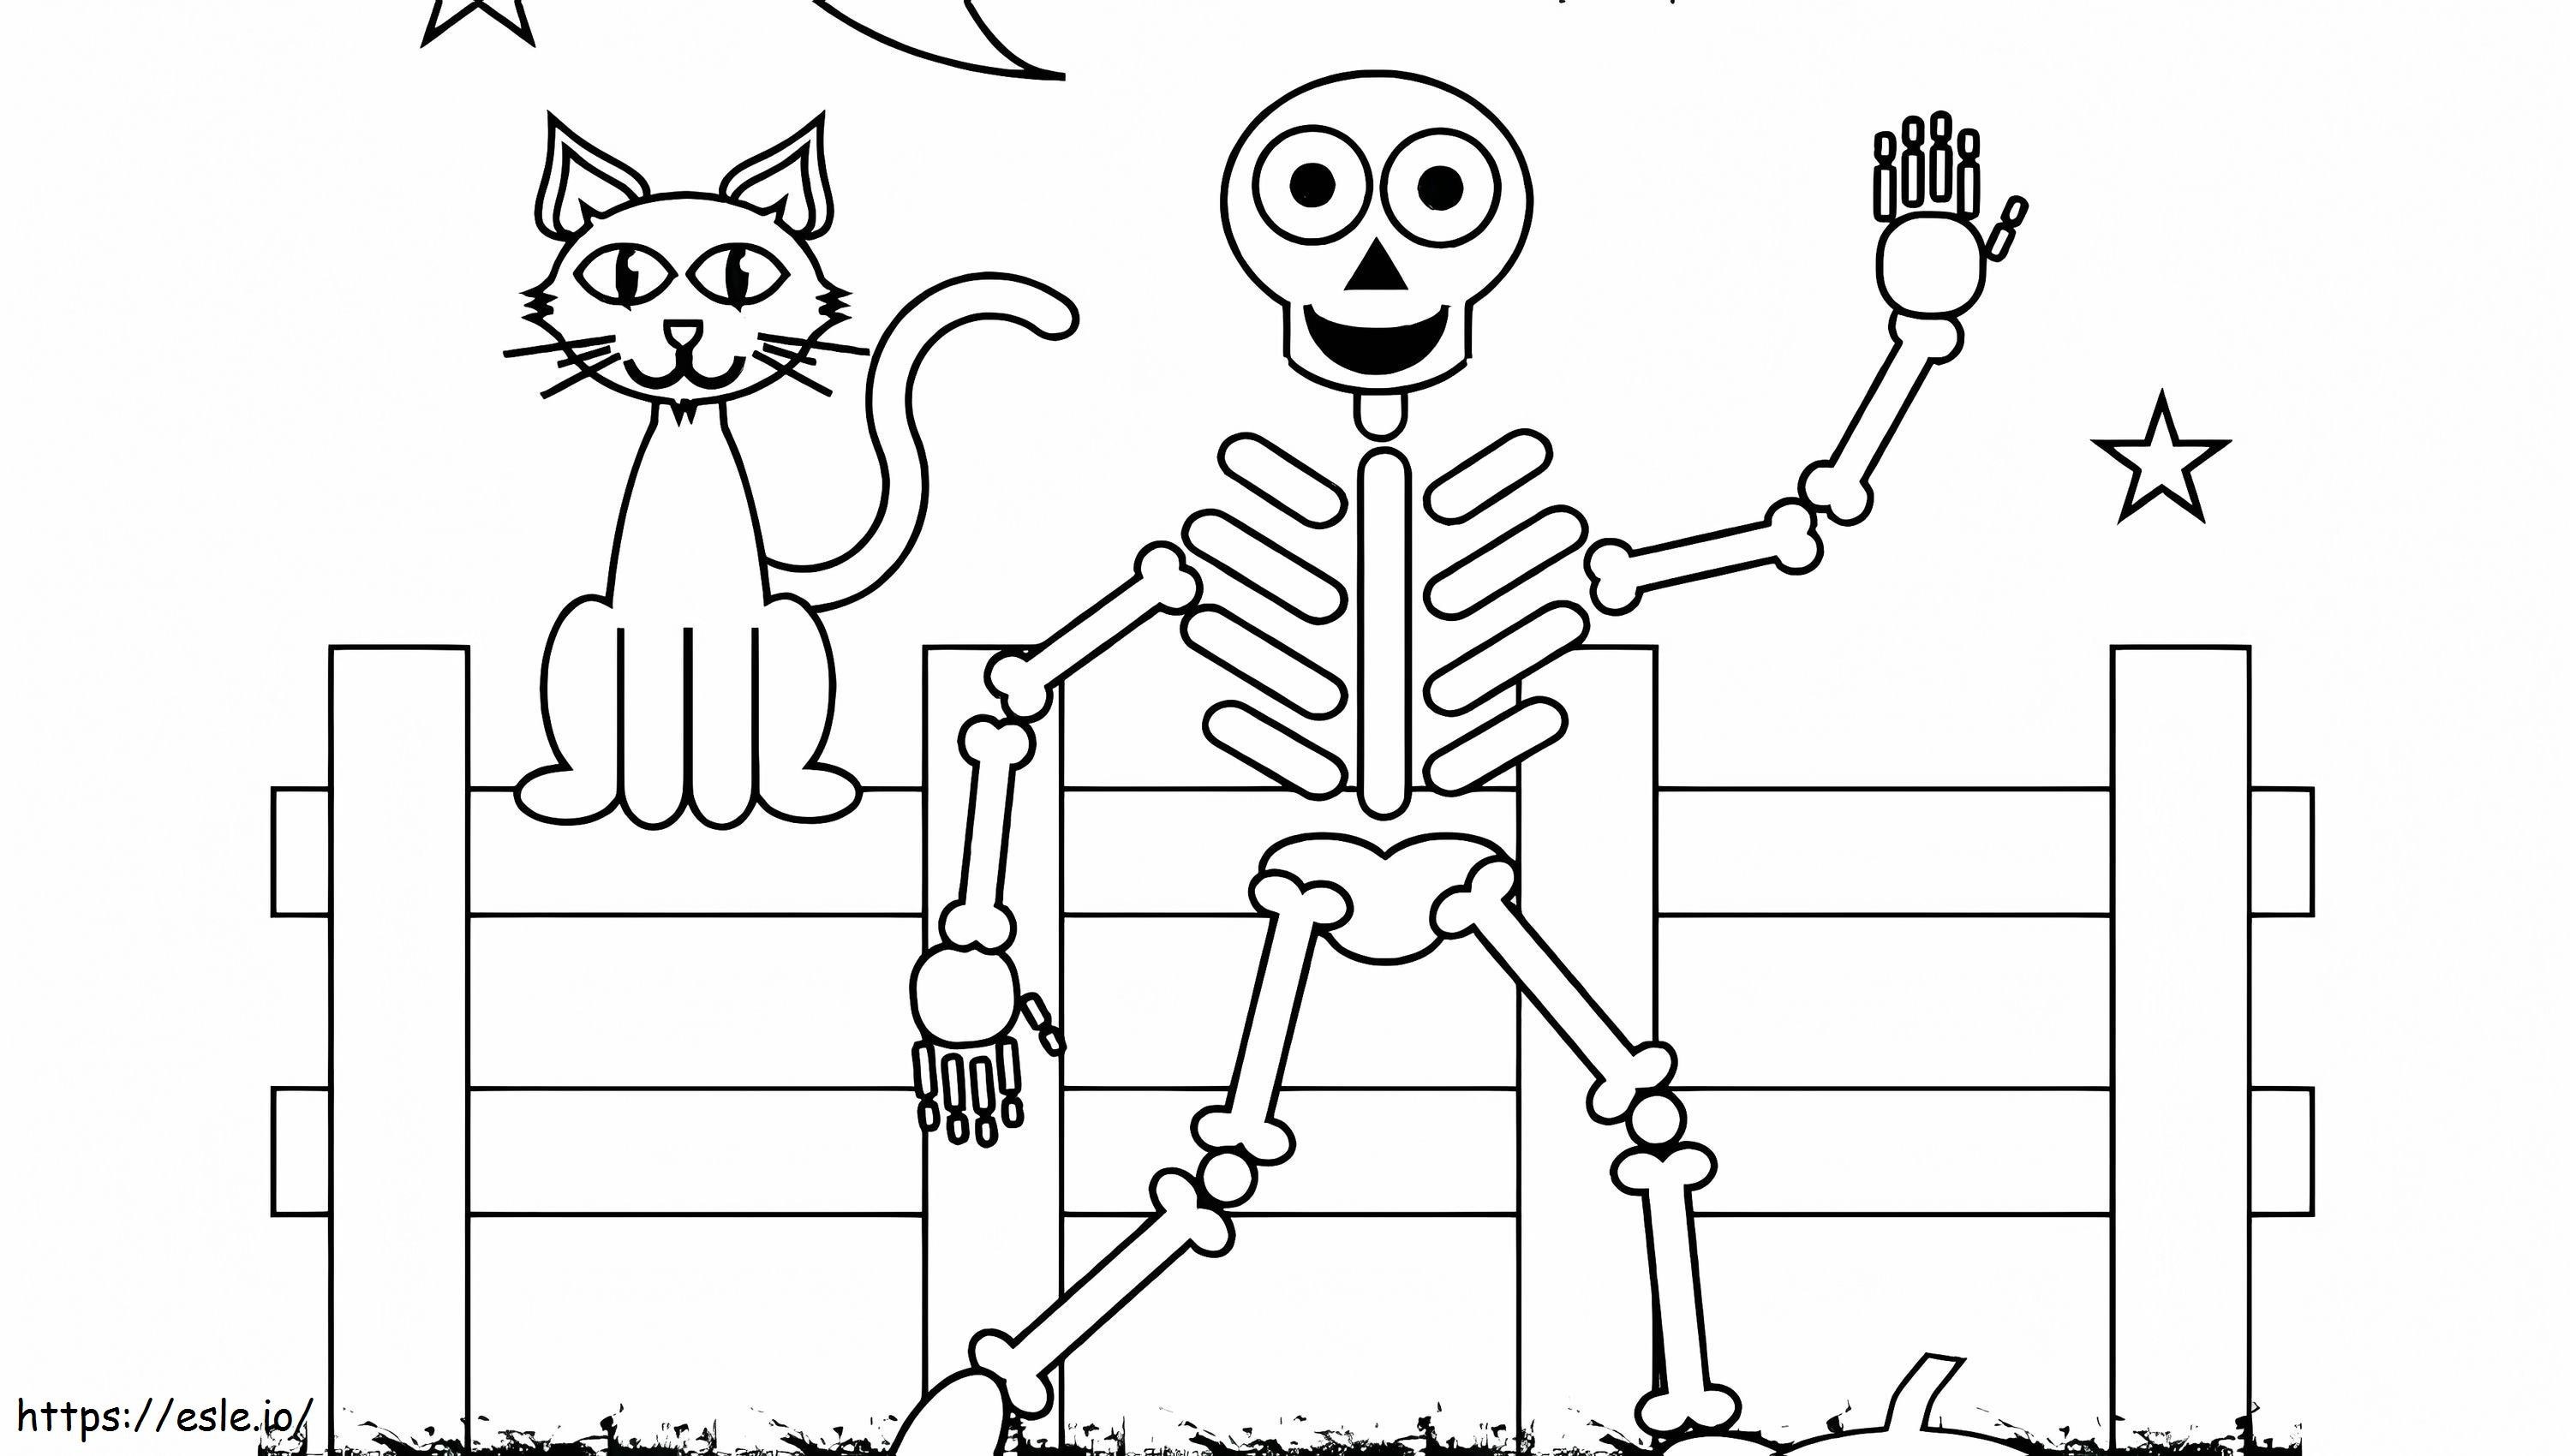 1539919716 Esqueleto para impressão grátis Esqueleto humano Esqueleto para impressão Esqueleto Decoração contemporânea Esqueleto para impressão grátis Halloween Sk para colorir